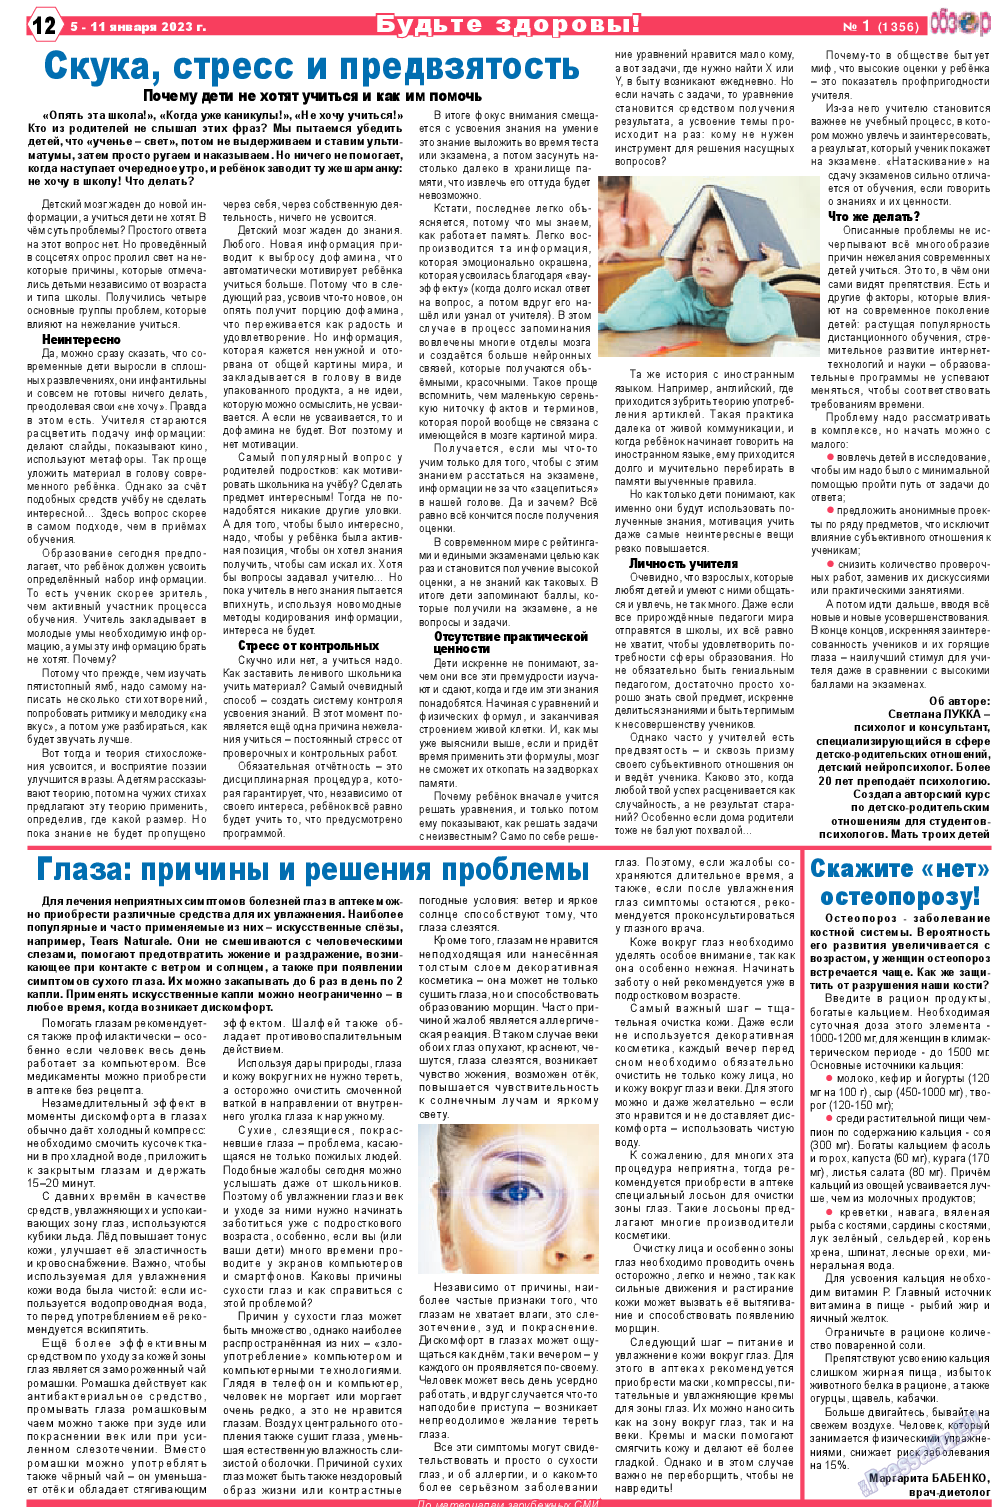 Обзор, газета. 2023 №1 стр.12